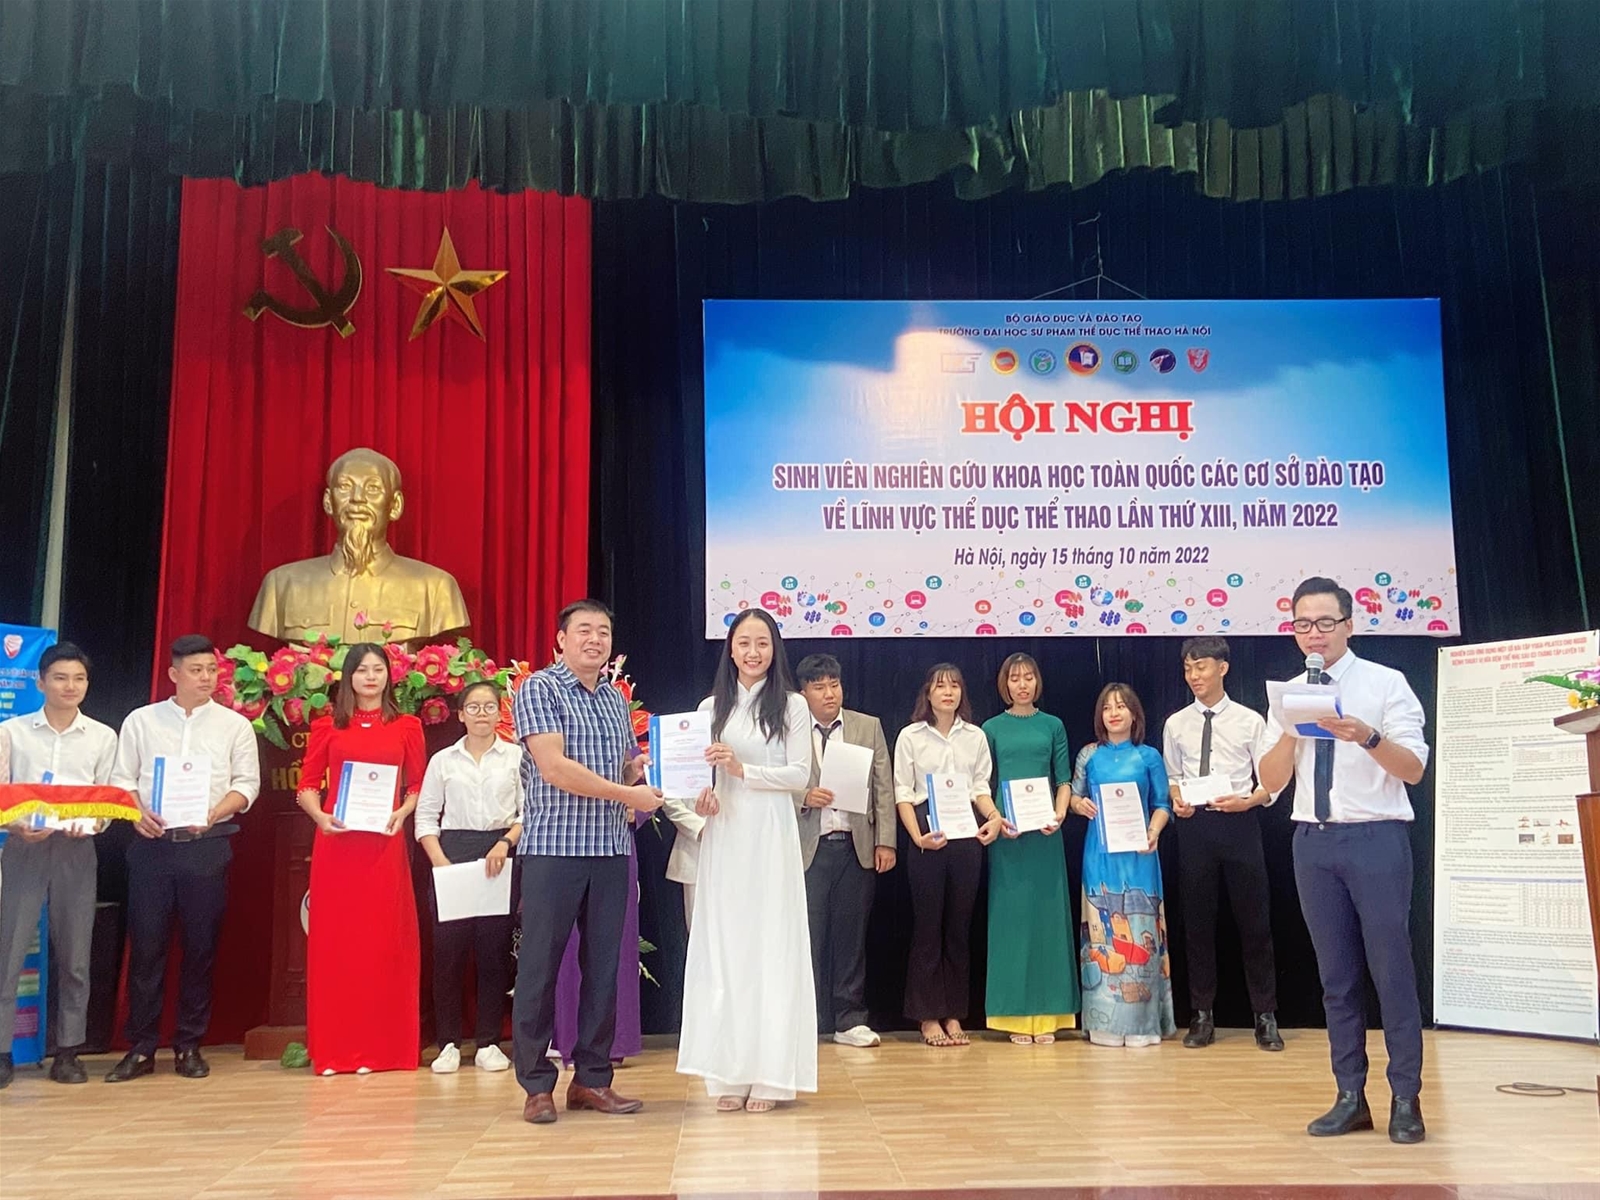 Sinh viên Trường Đại học TDTT Bắc Ninh giành giải đặc biệt tại Hội nghị sinh viên nhiên cứu khoa học toàn quốc các cơ sở đào tạo về TDTT lần thứ XIII năm 2022